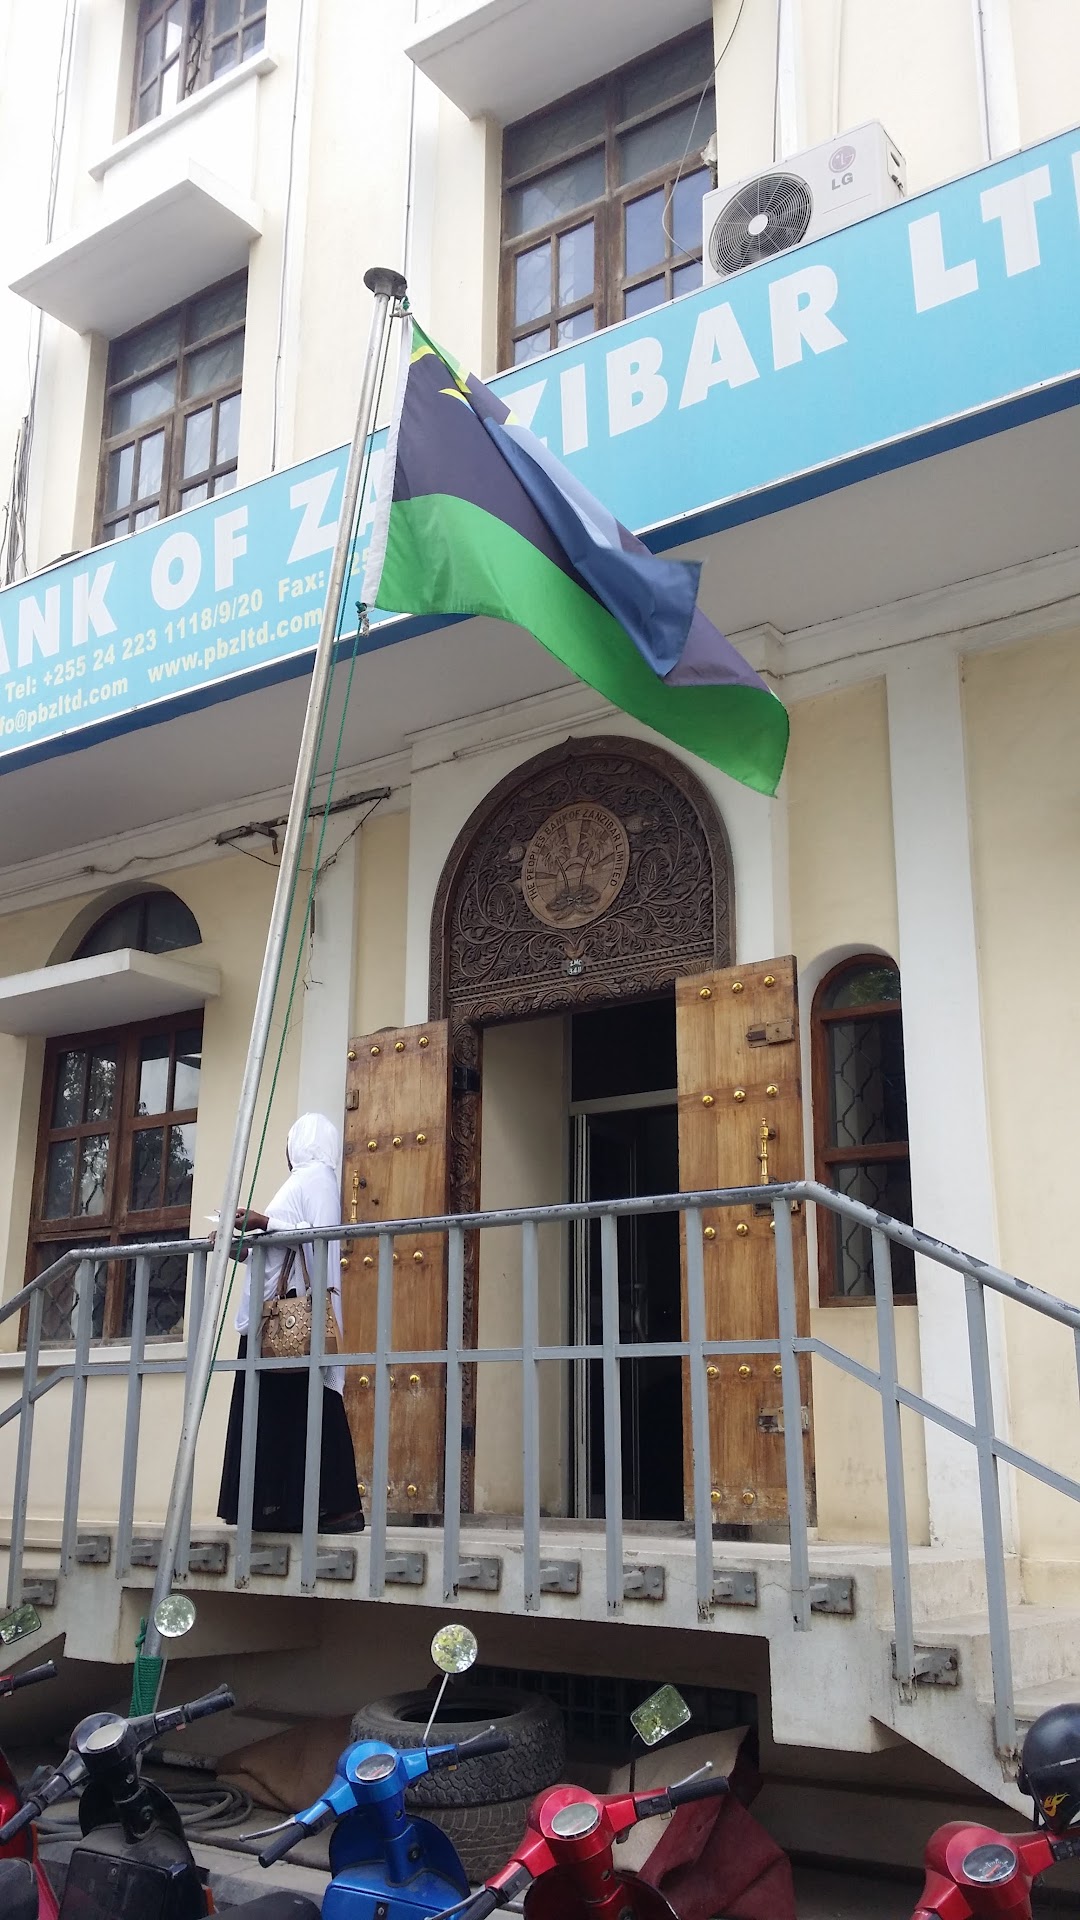 The People's Bank of Zanzibar